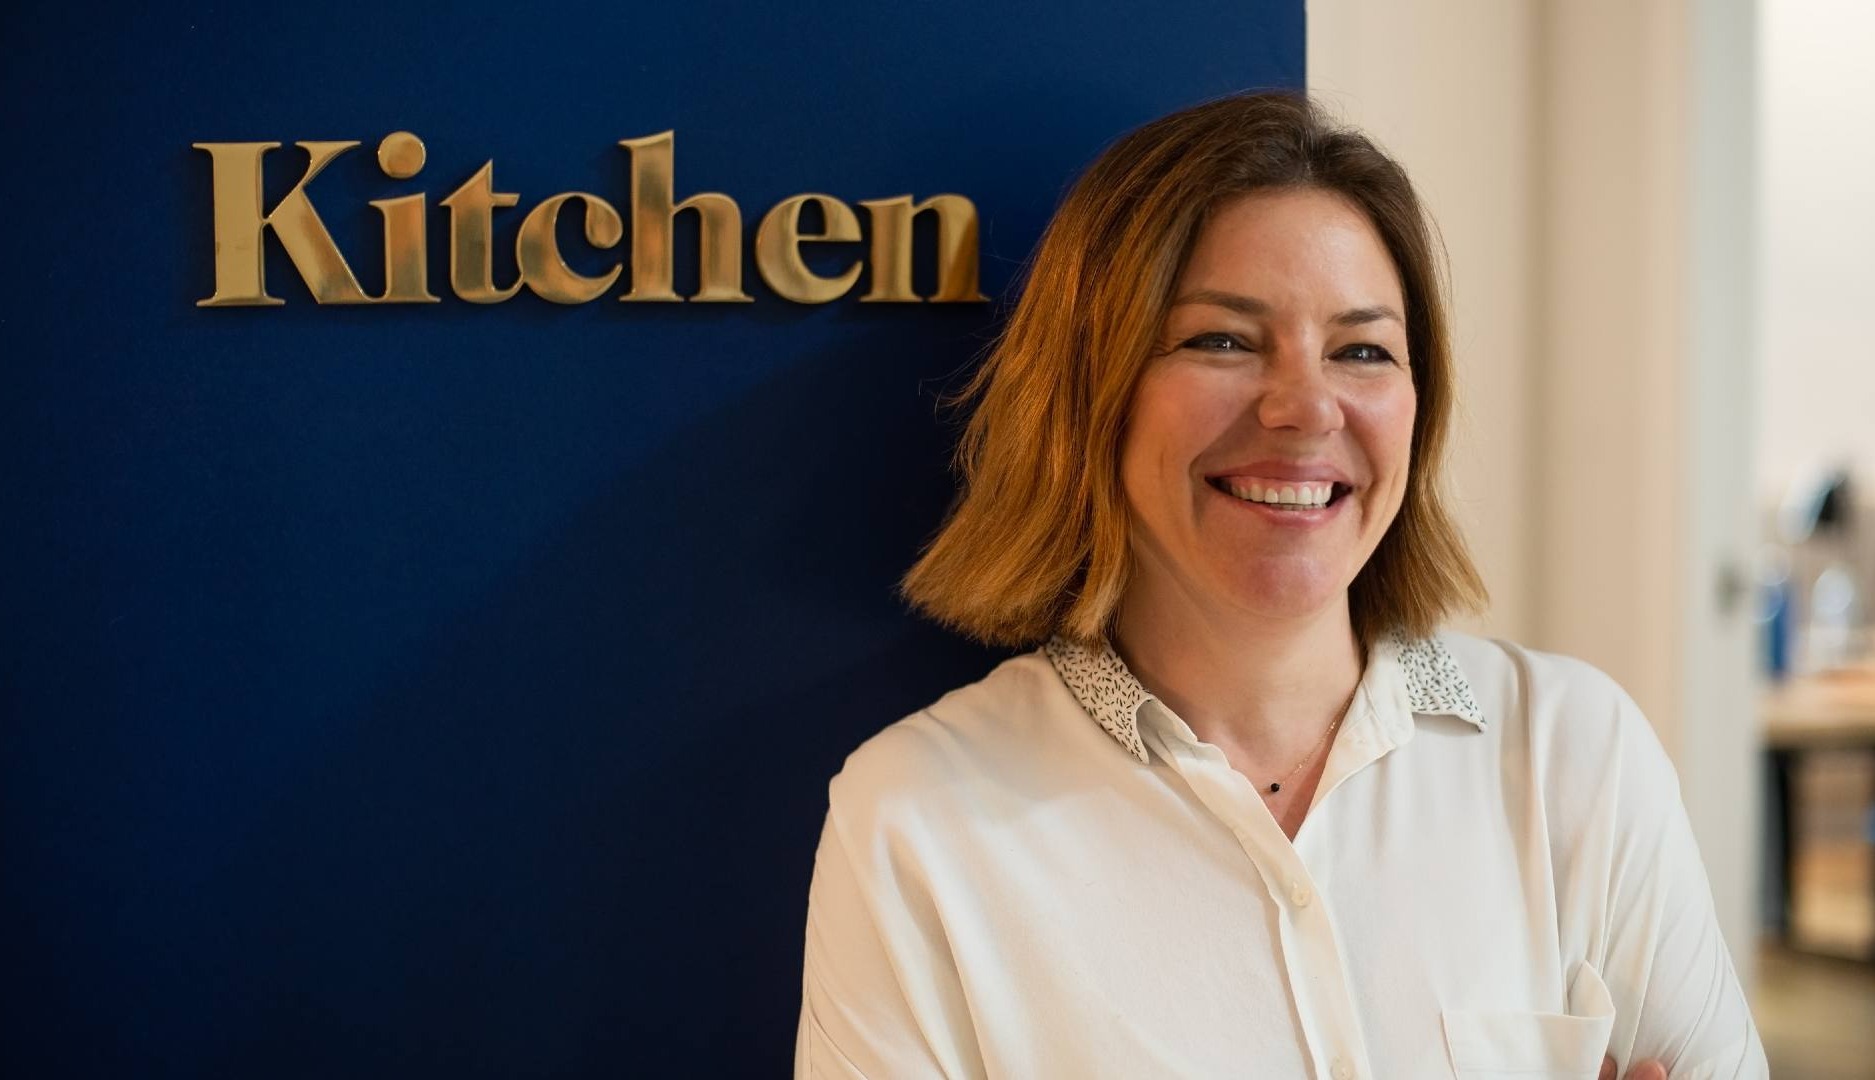 Tras 20 años en Sra. Rushmore, Patricia Ferrater se une a Kitchen como Directora de Servicios al Cliente